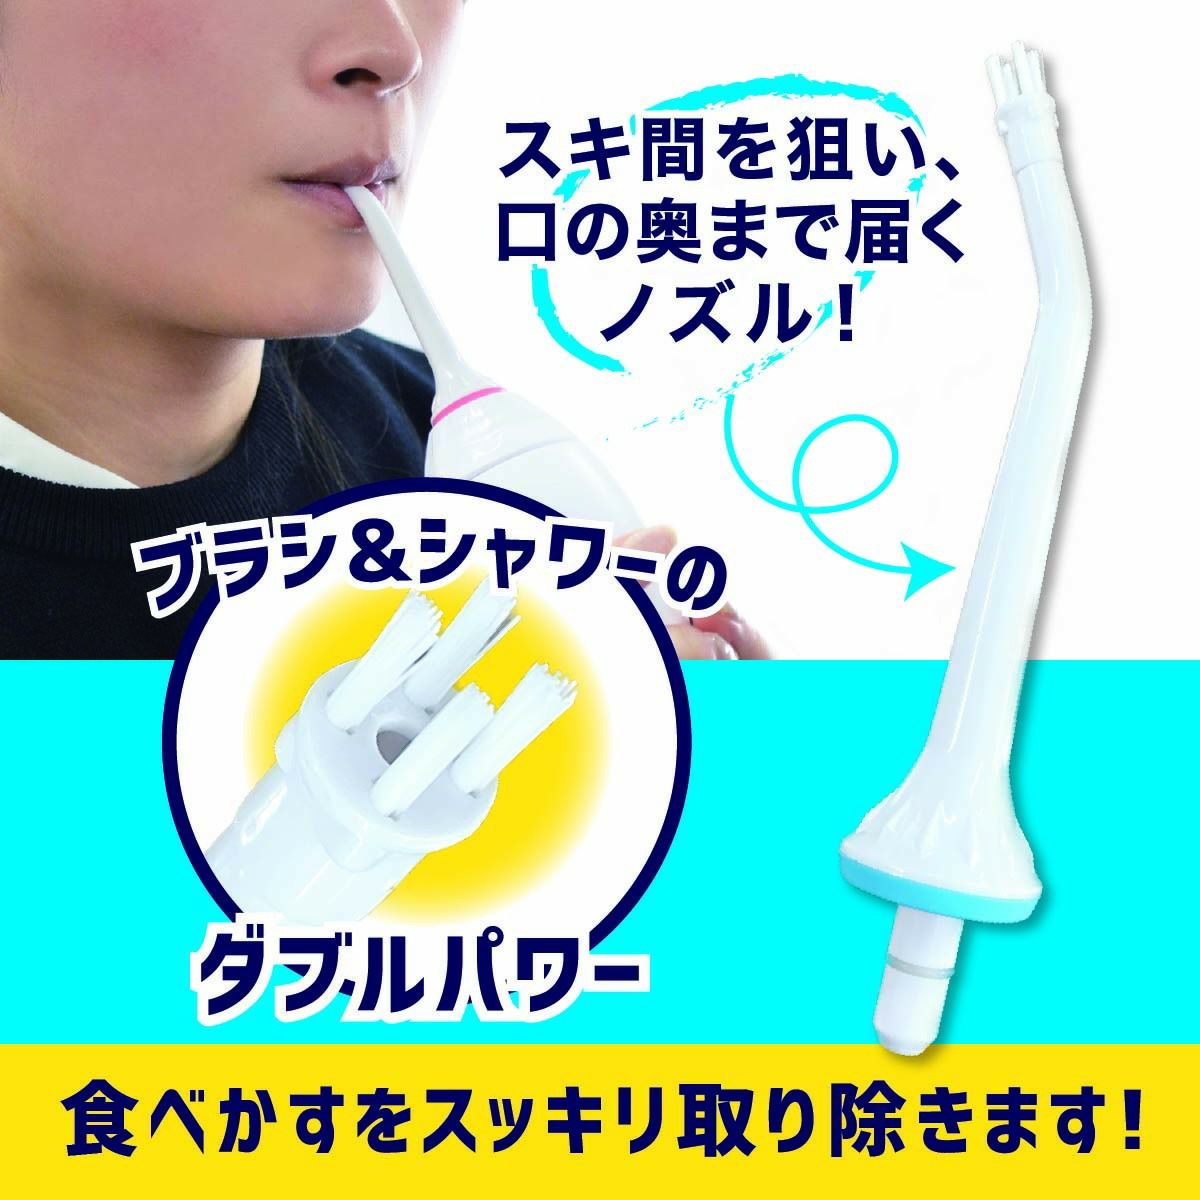 スキ間シャワー 歯ブラシ 歯ブラシ手動水流 歯ブラシ携帯 歯磨き改善 歯磨き対策